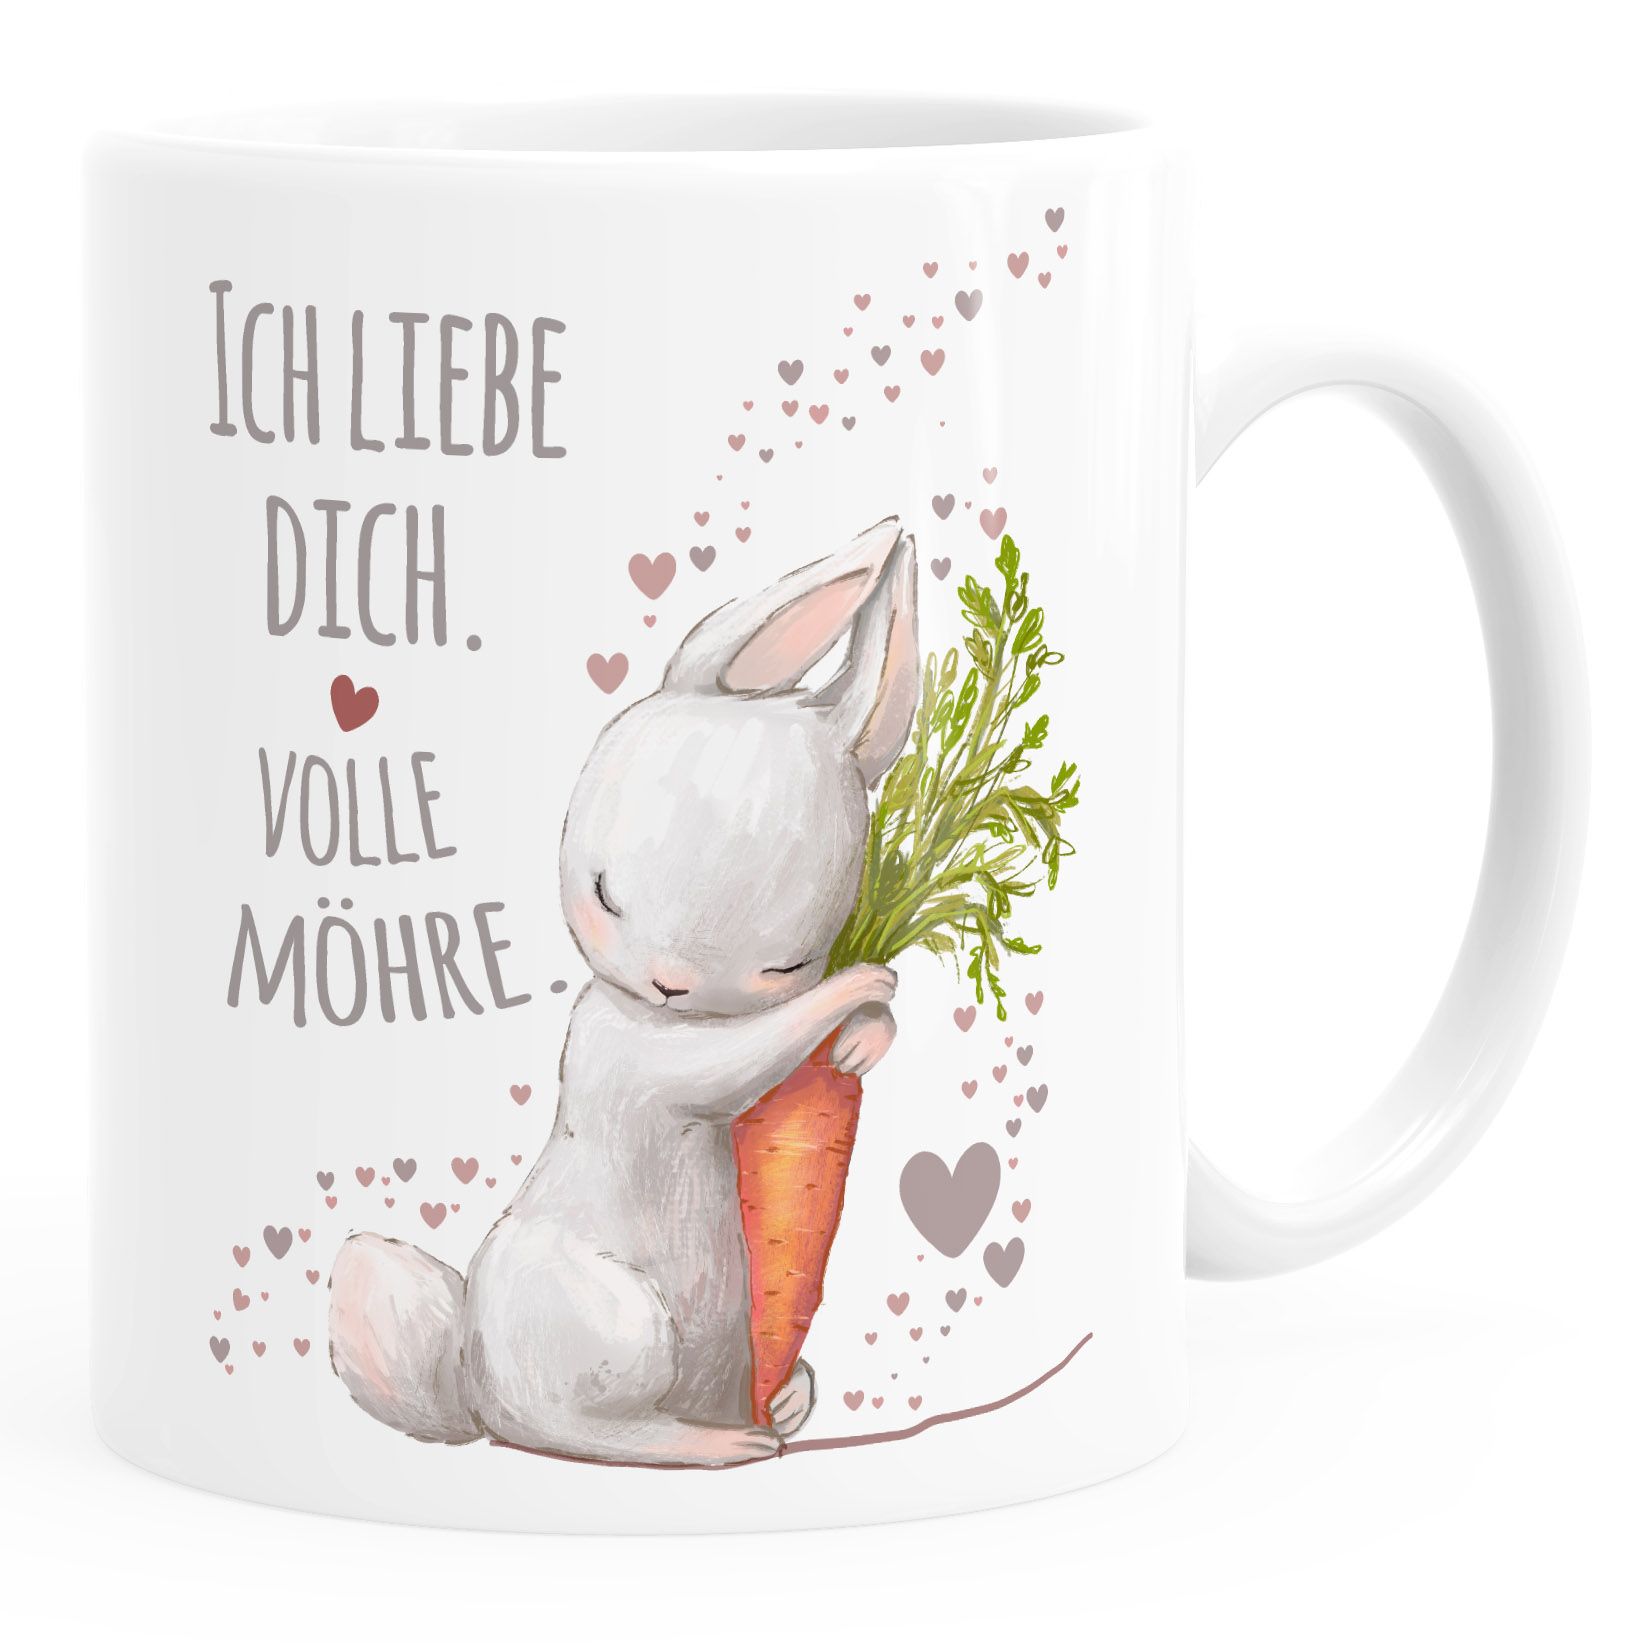 Kaffee-Tasse Liebesgeschenk Ich liebe dich volle Möhre Hase mit Karotte Liebesbotschaft Liebesbeweis Moonworks®